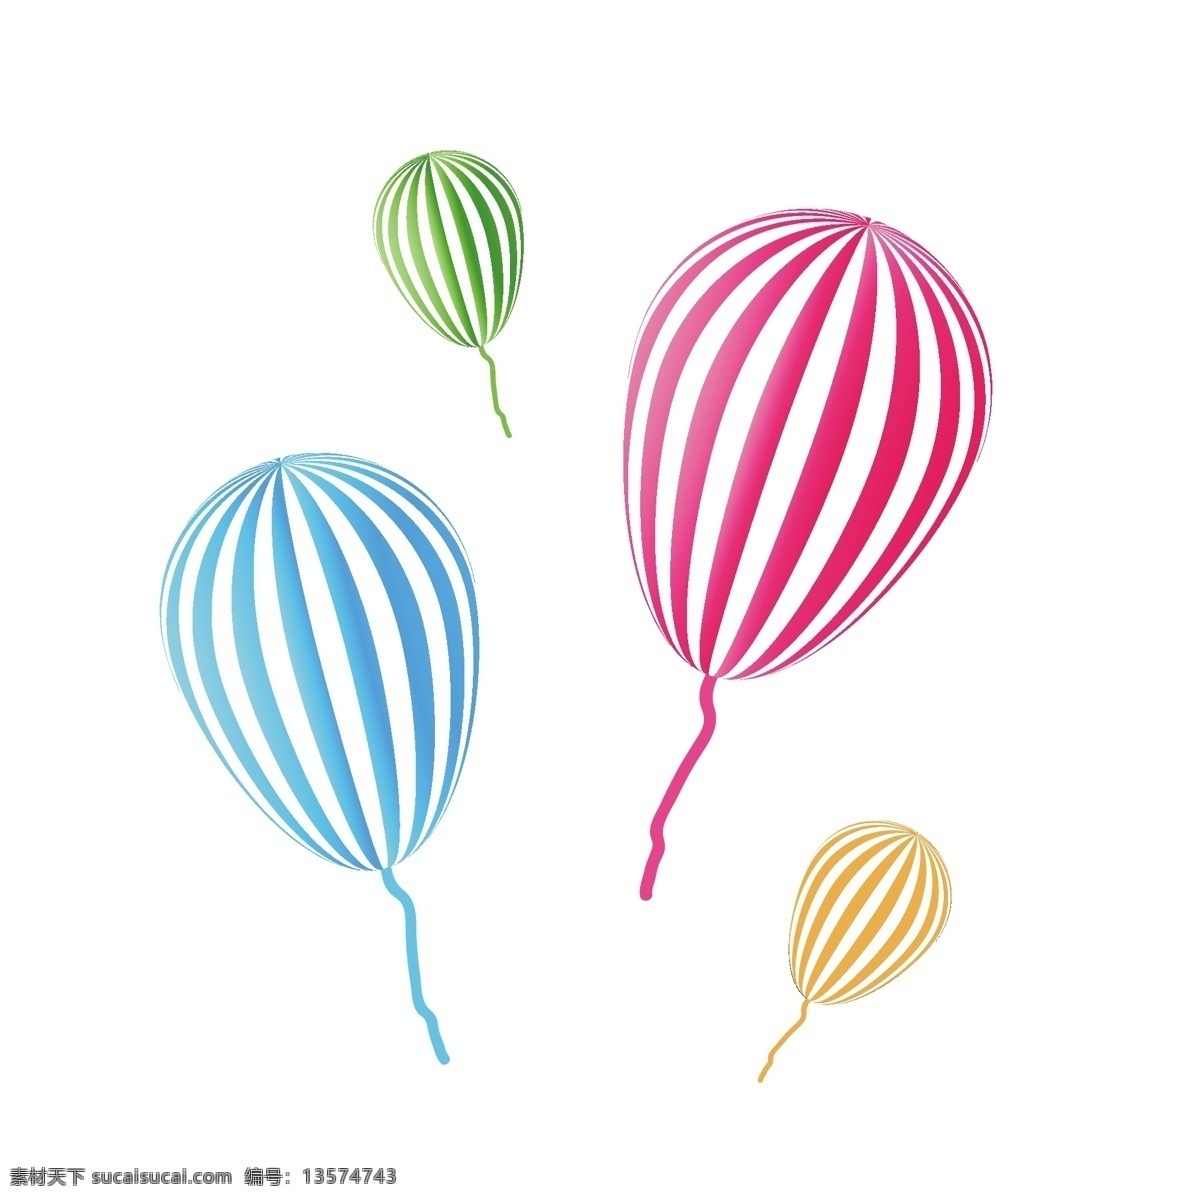 夏季渐变气球 条纹气球 玩具气球 彩色